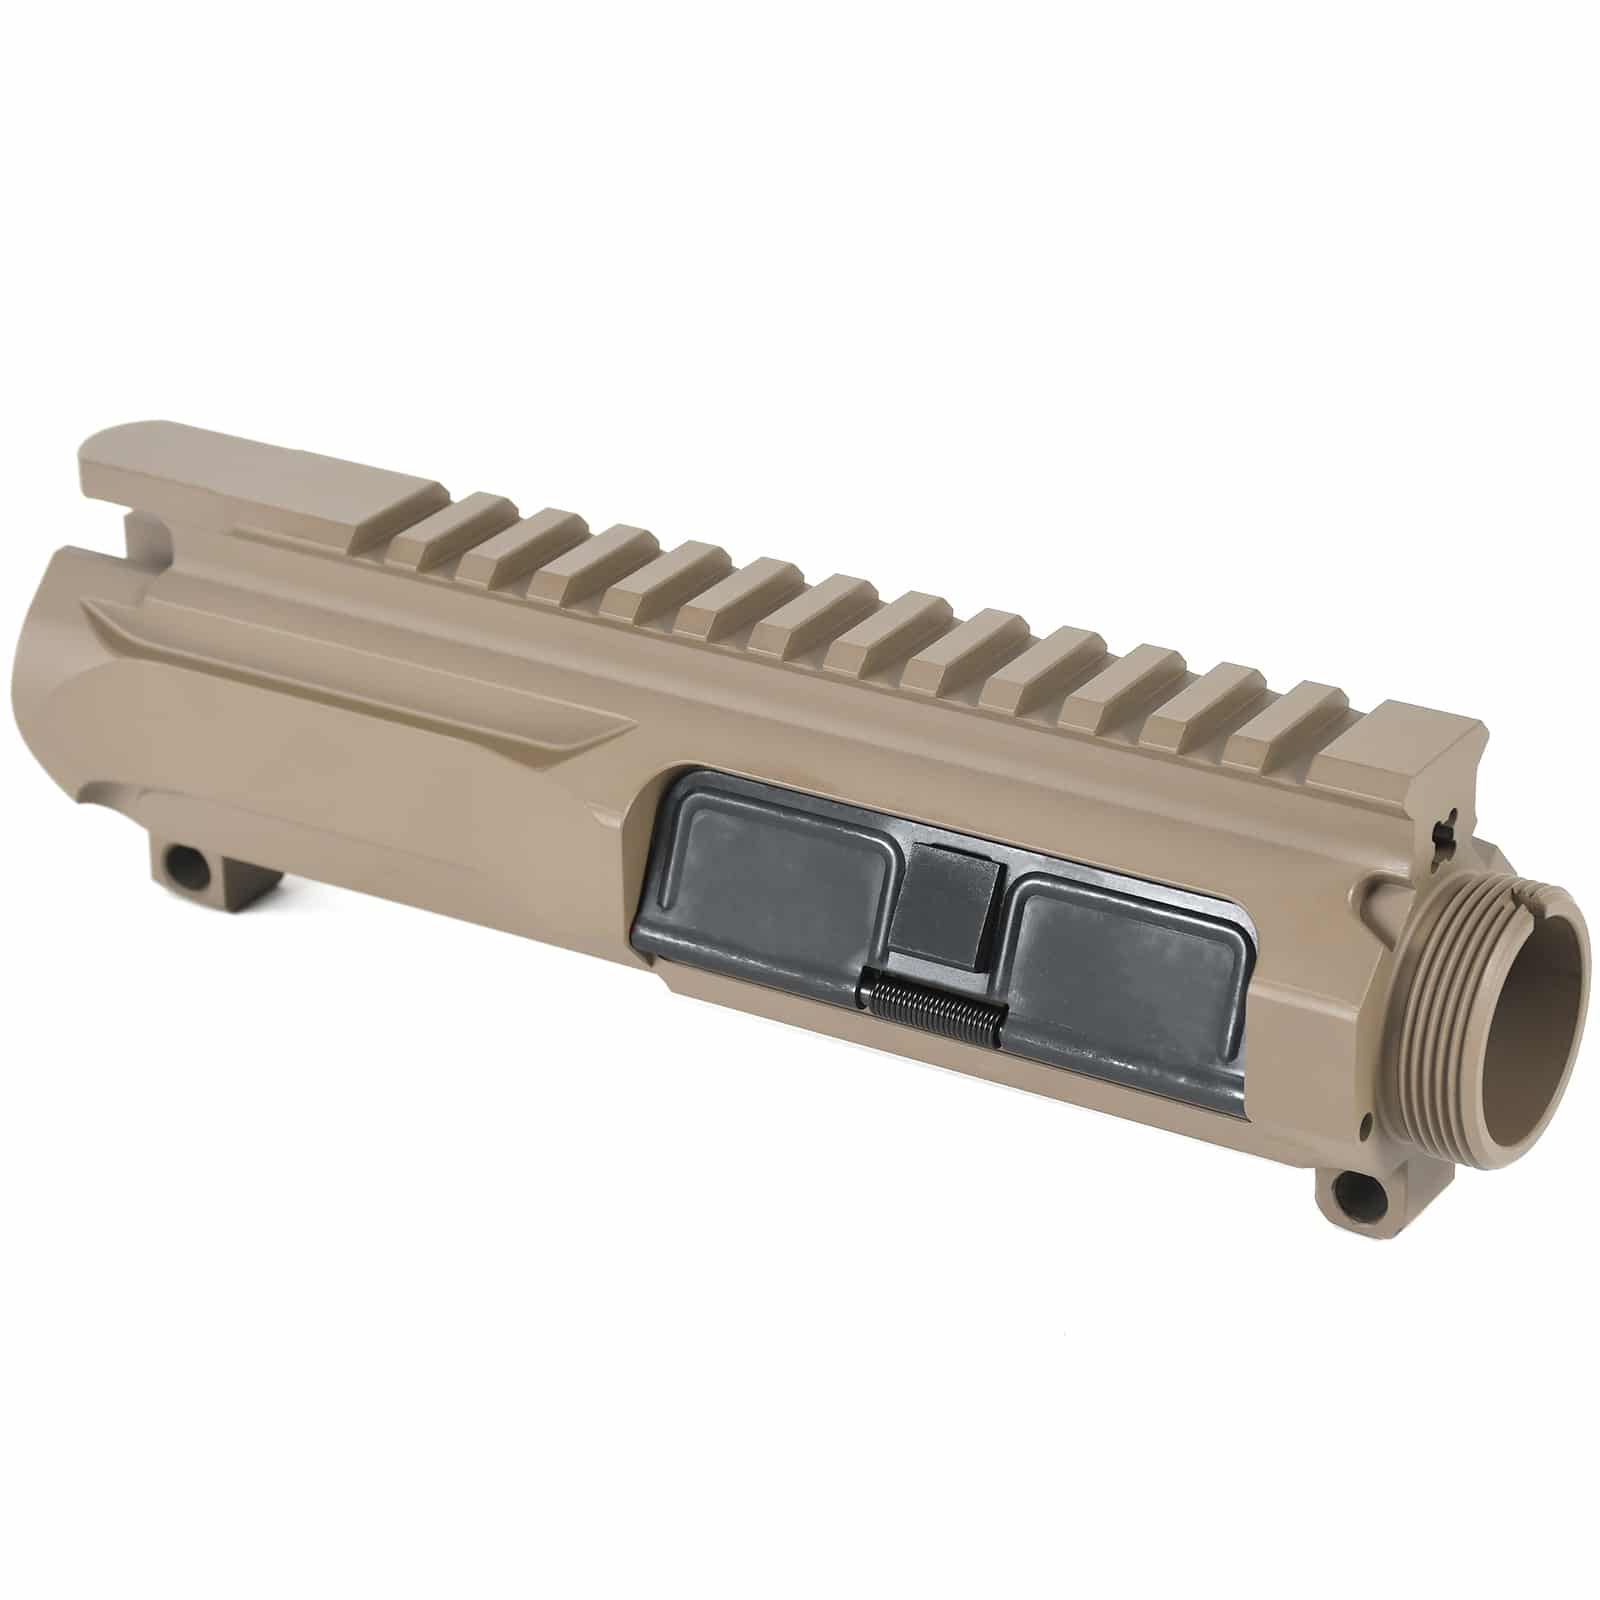 AT3™ Slick Side Upper | Billet Upper Receiver for AR-15